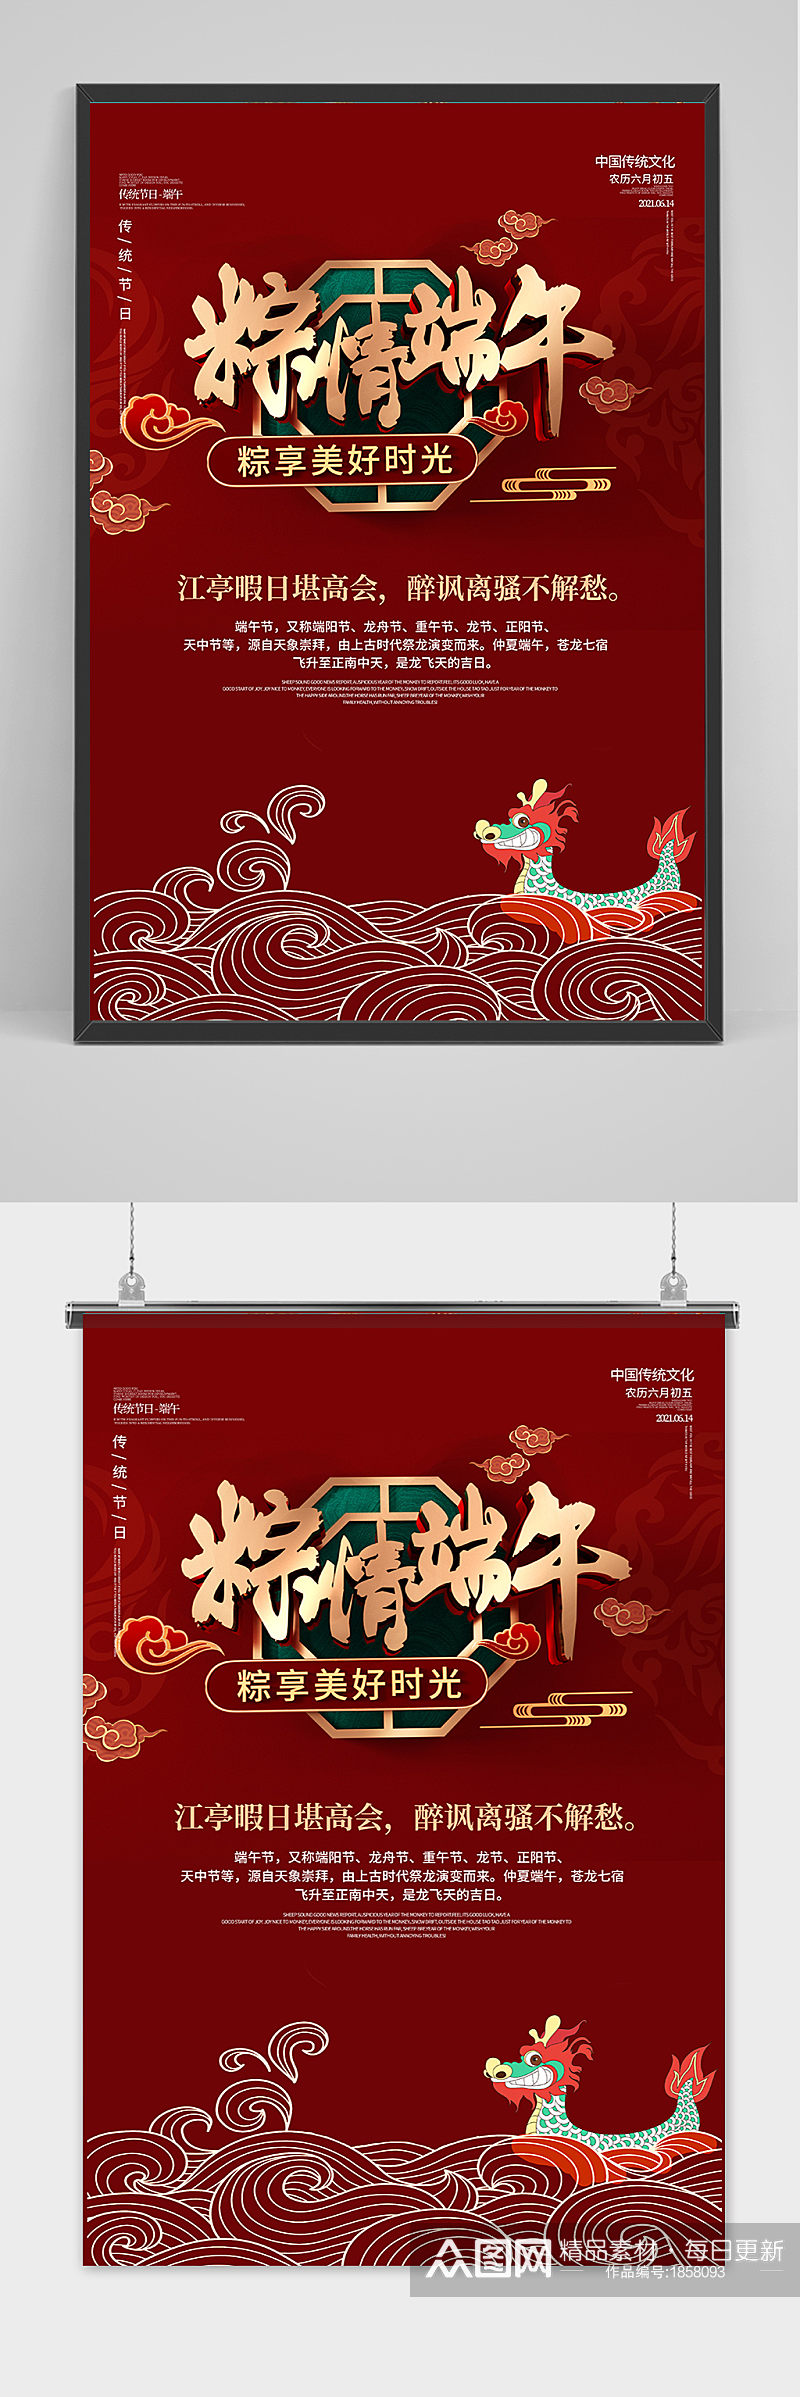 红色创意端午节中国风海报素材